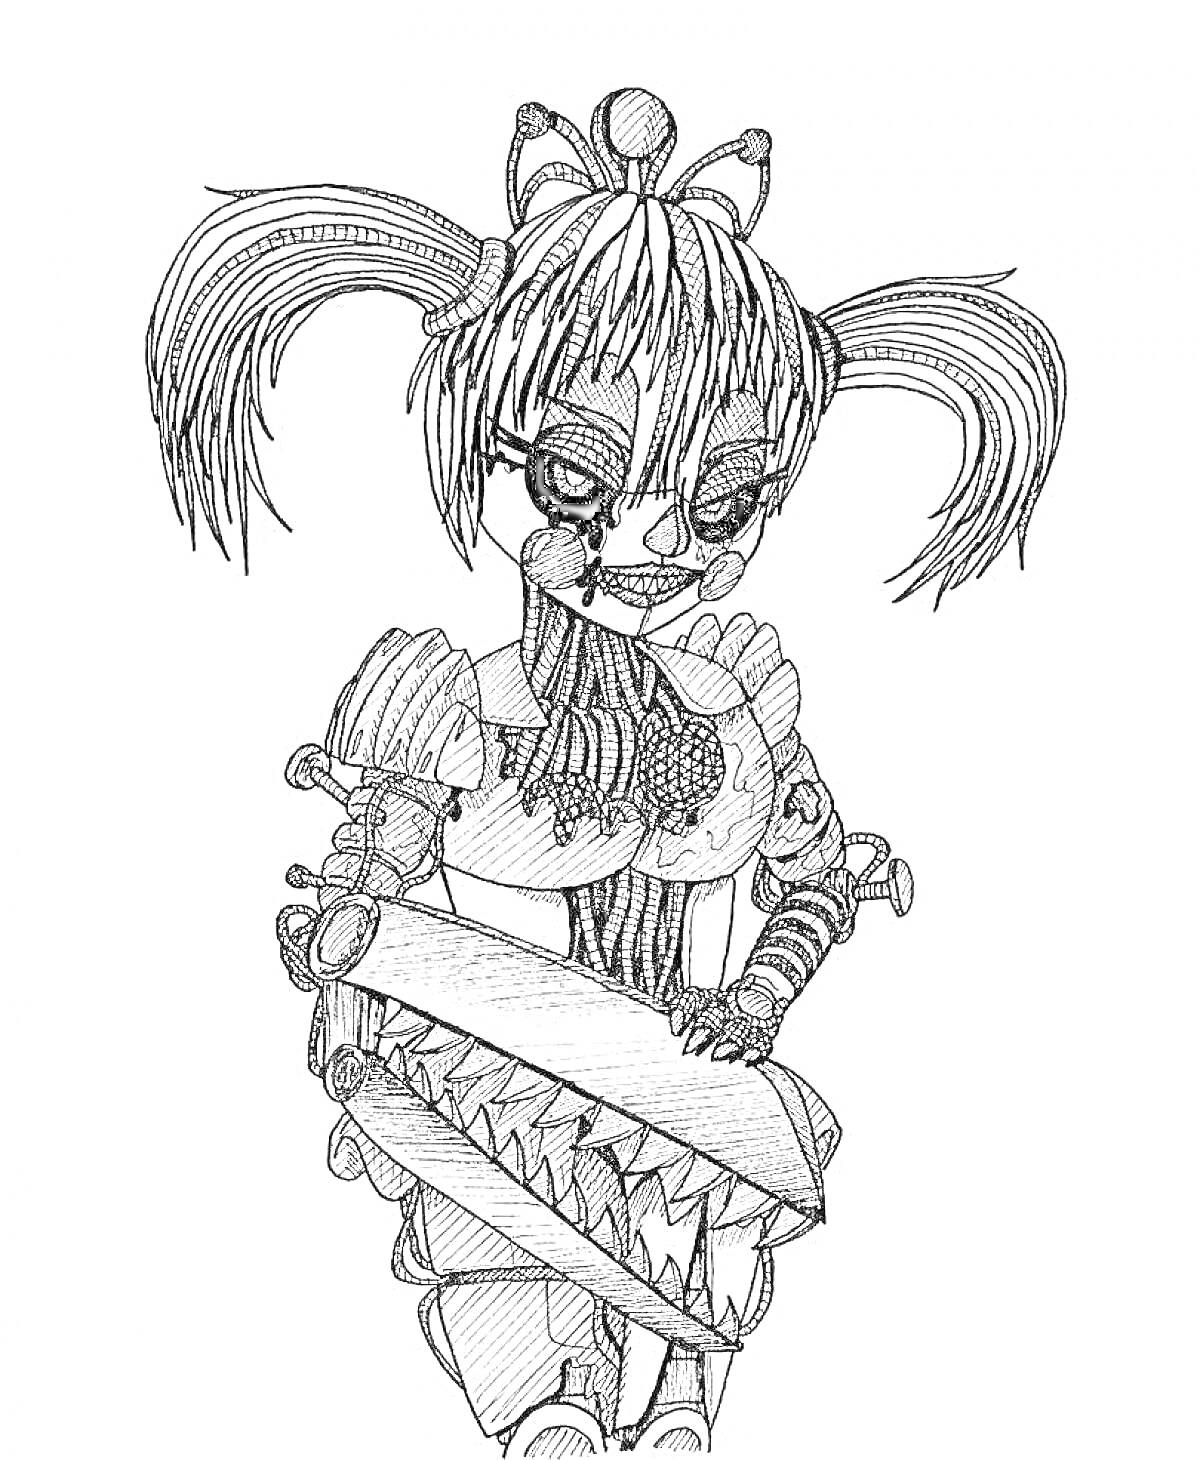 Раскраска Бейби из FNaF с двумя хвостиками, кукольным лицом и большой механической рукой